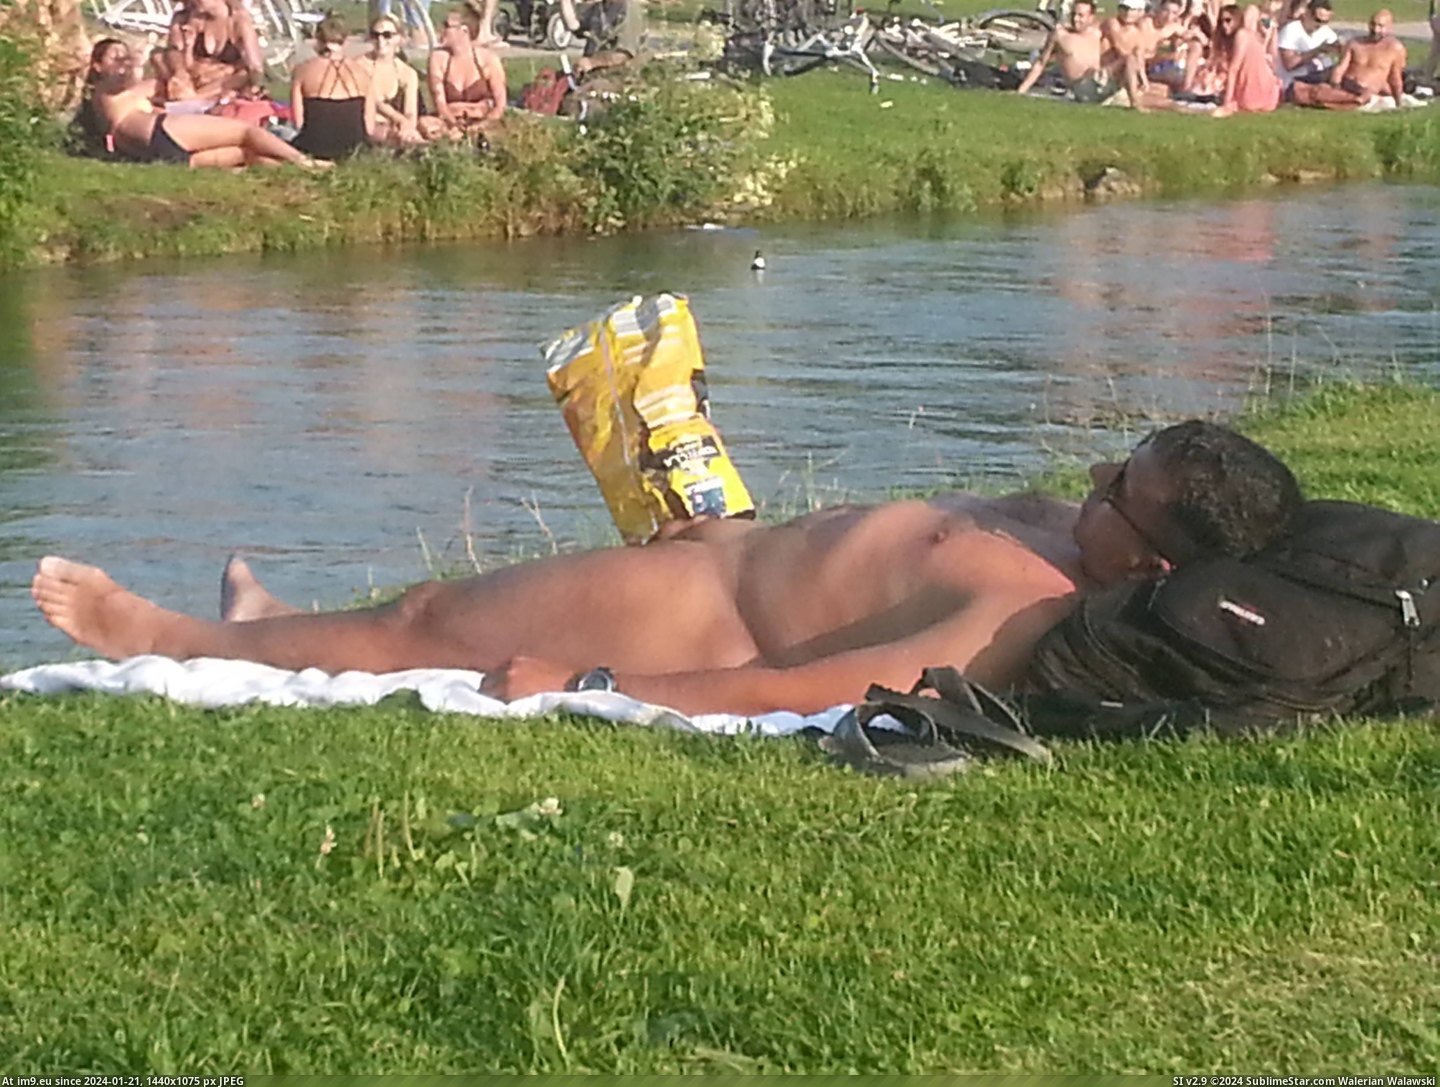 #Wtf #Naked #Man #Crisp #Erection #Sleeping #Bag #Puts [Wtf] Naked sleeping man gets erection so someone puts crisp bag over it. Pic. (Obraz z album My r/WTF favs))